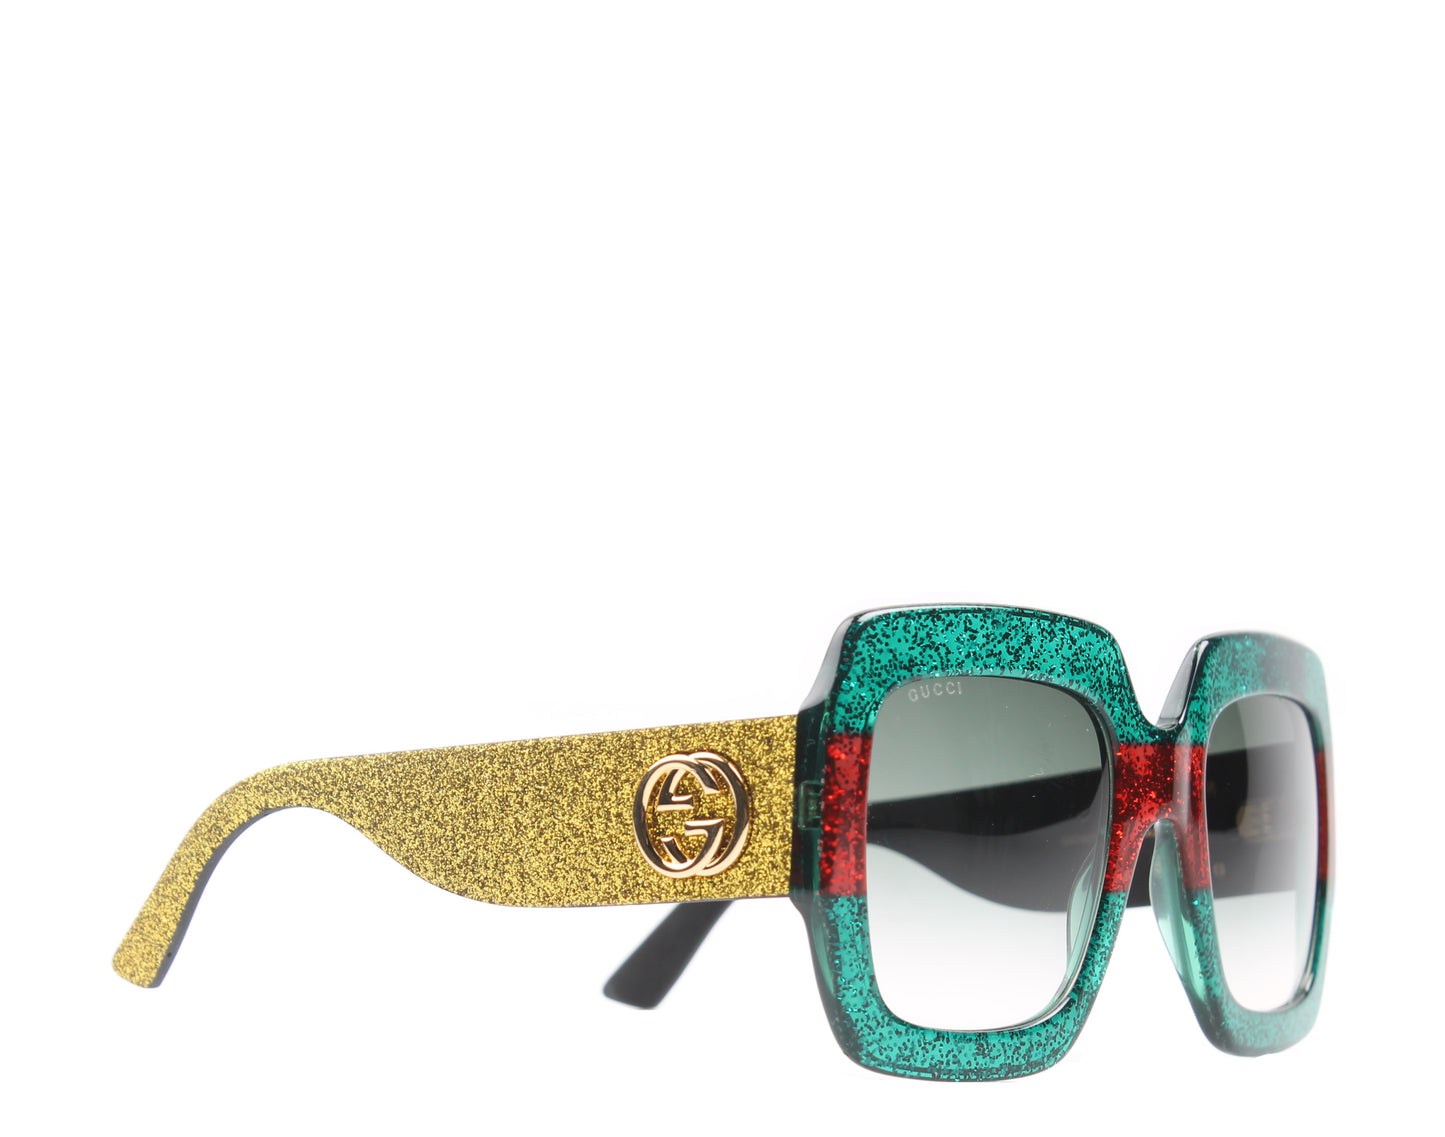 Gucci GG 0102S Women's Sunglasses